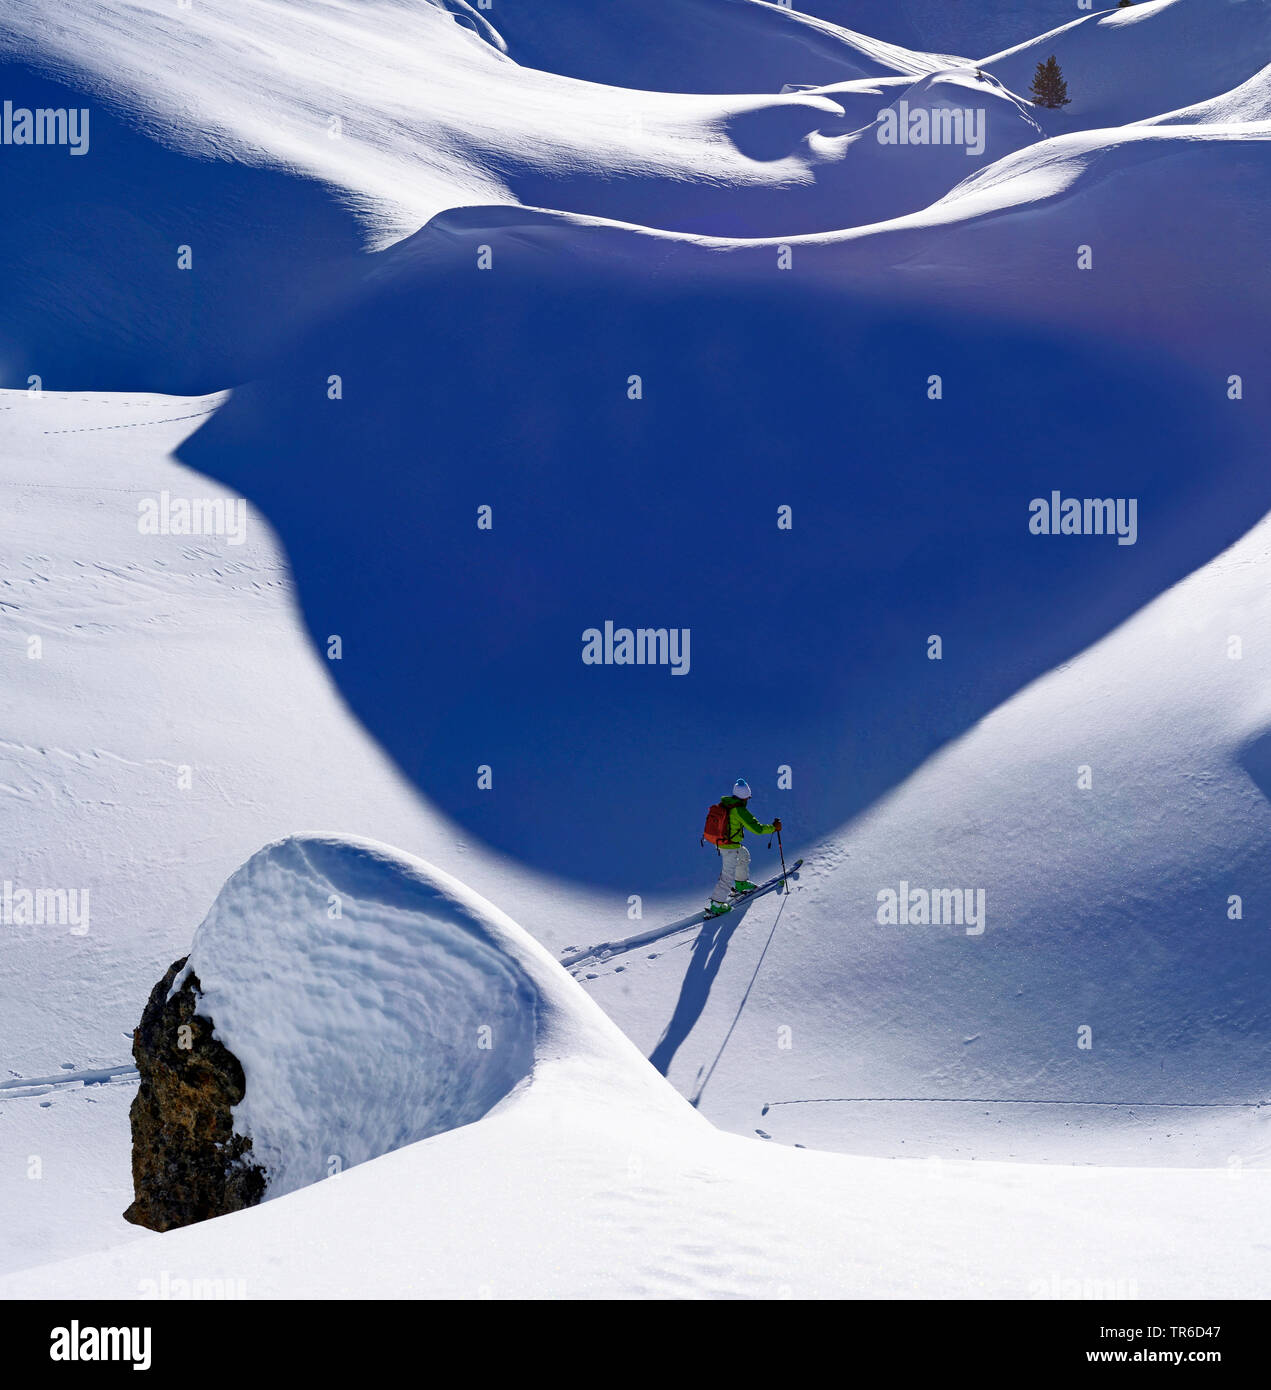 Ski touring in snowy mountain scenery, France, Savoie, Sainte Foy Tarentaise Stock Photo